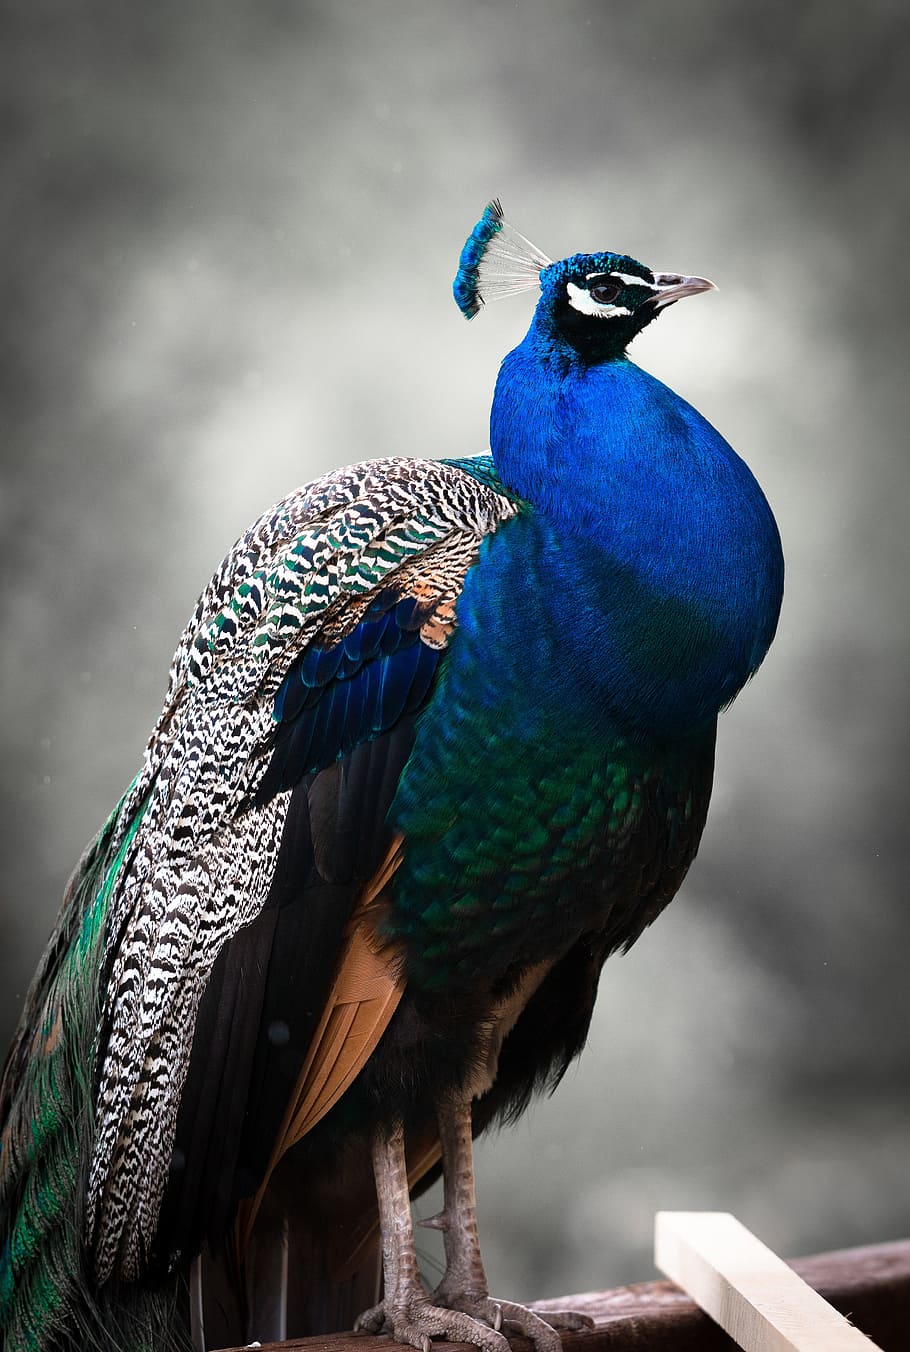 ティルトシフト写真, 青, 緑, 黒, 孔雀, 青孔雀, 立っている, 木の板, 鳥, カラフル